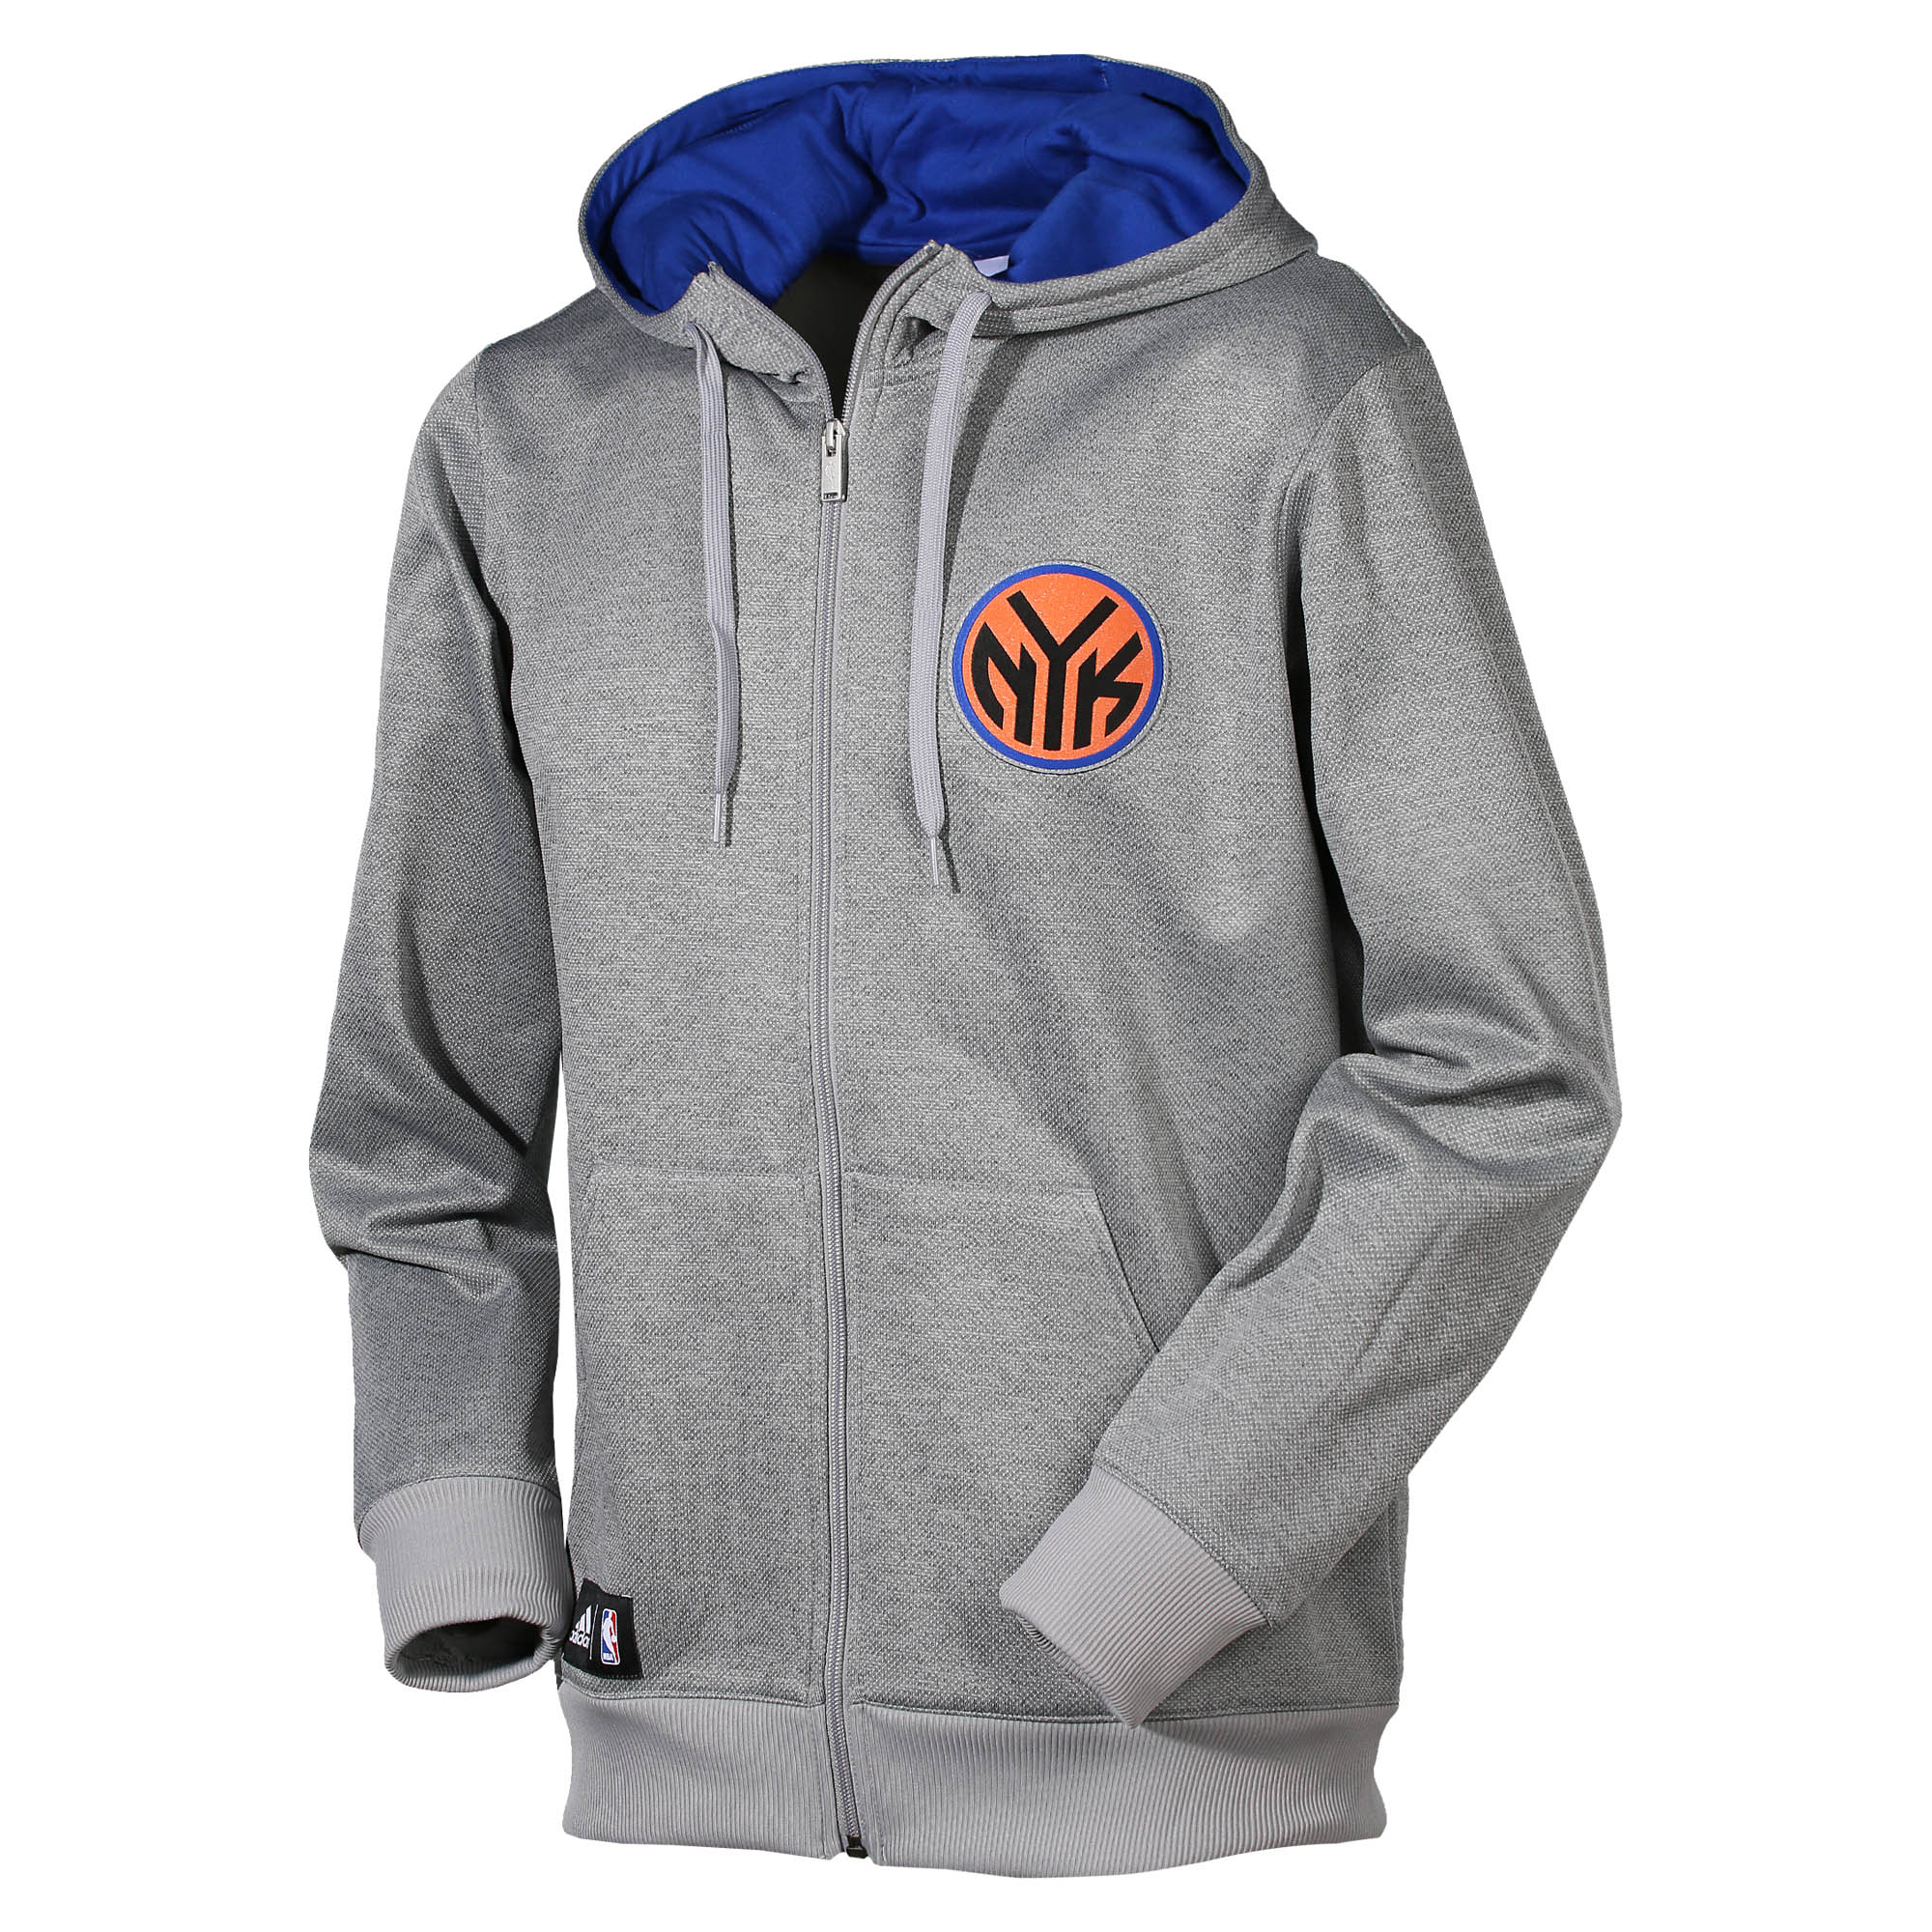 Adidas NBA York Knicks Fan Wear (gris/azul)